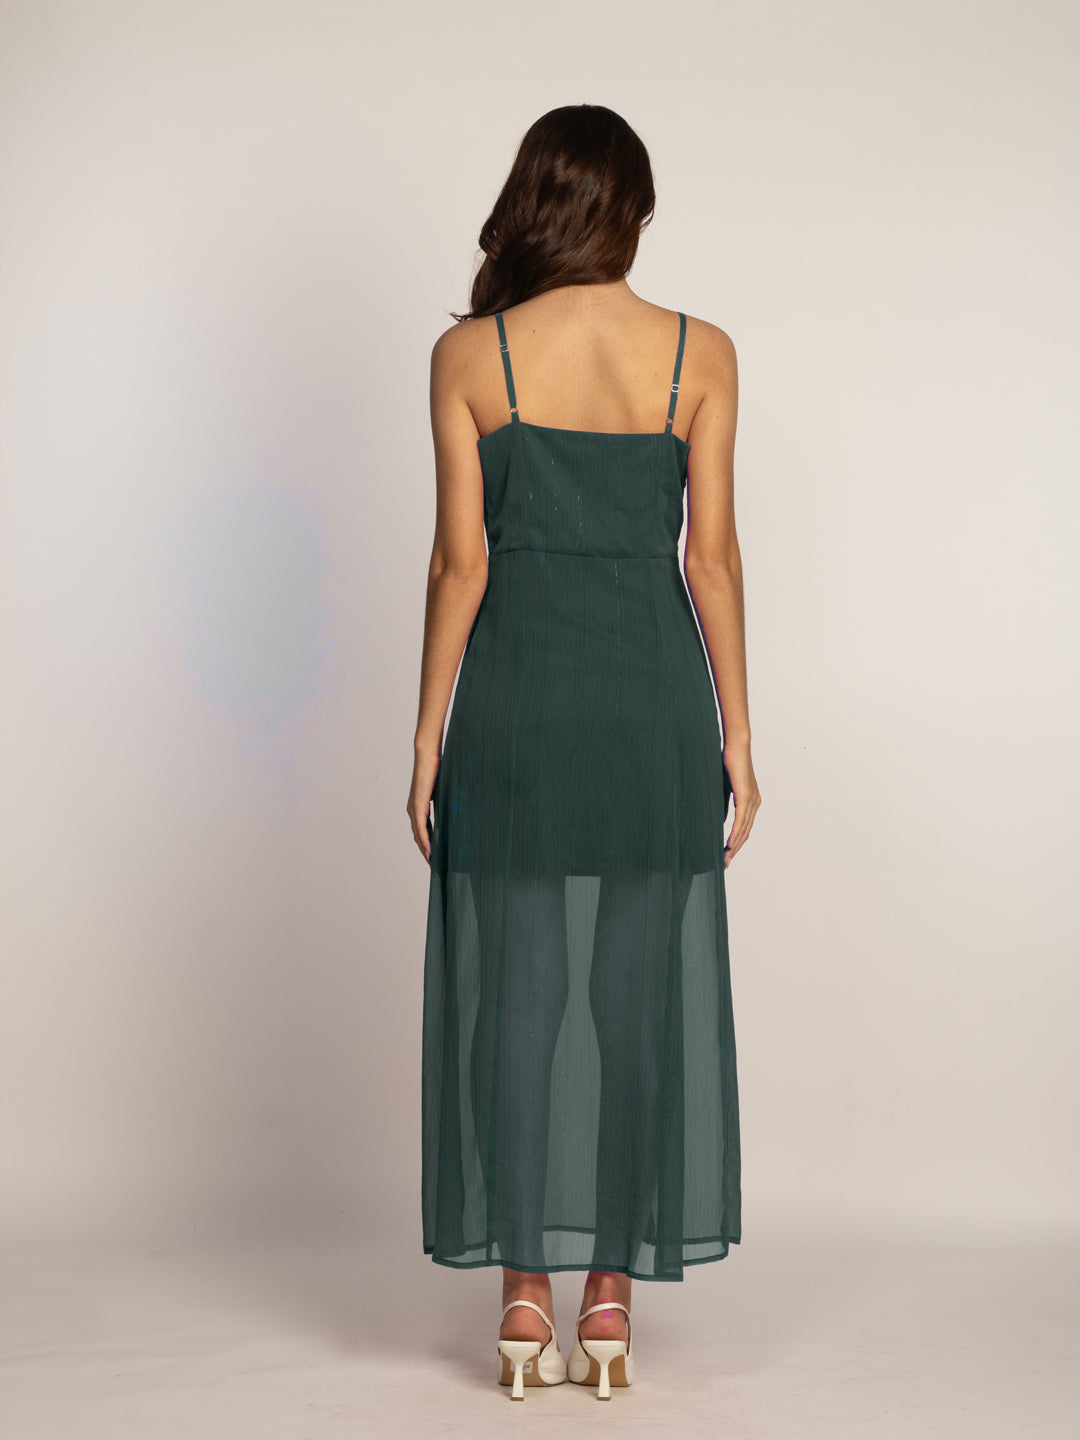 Bottle Green Solid Fit & Flared Maxi Dress-VD08038_152-BottleGreen-4